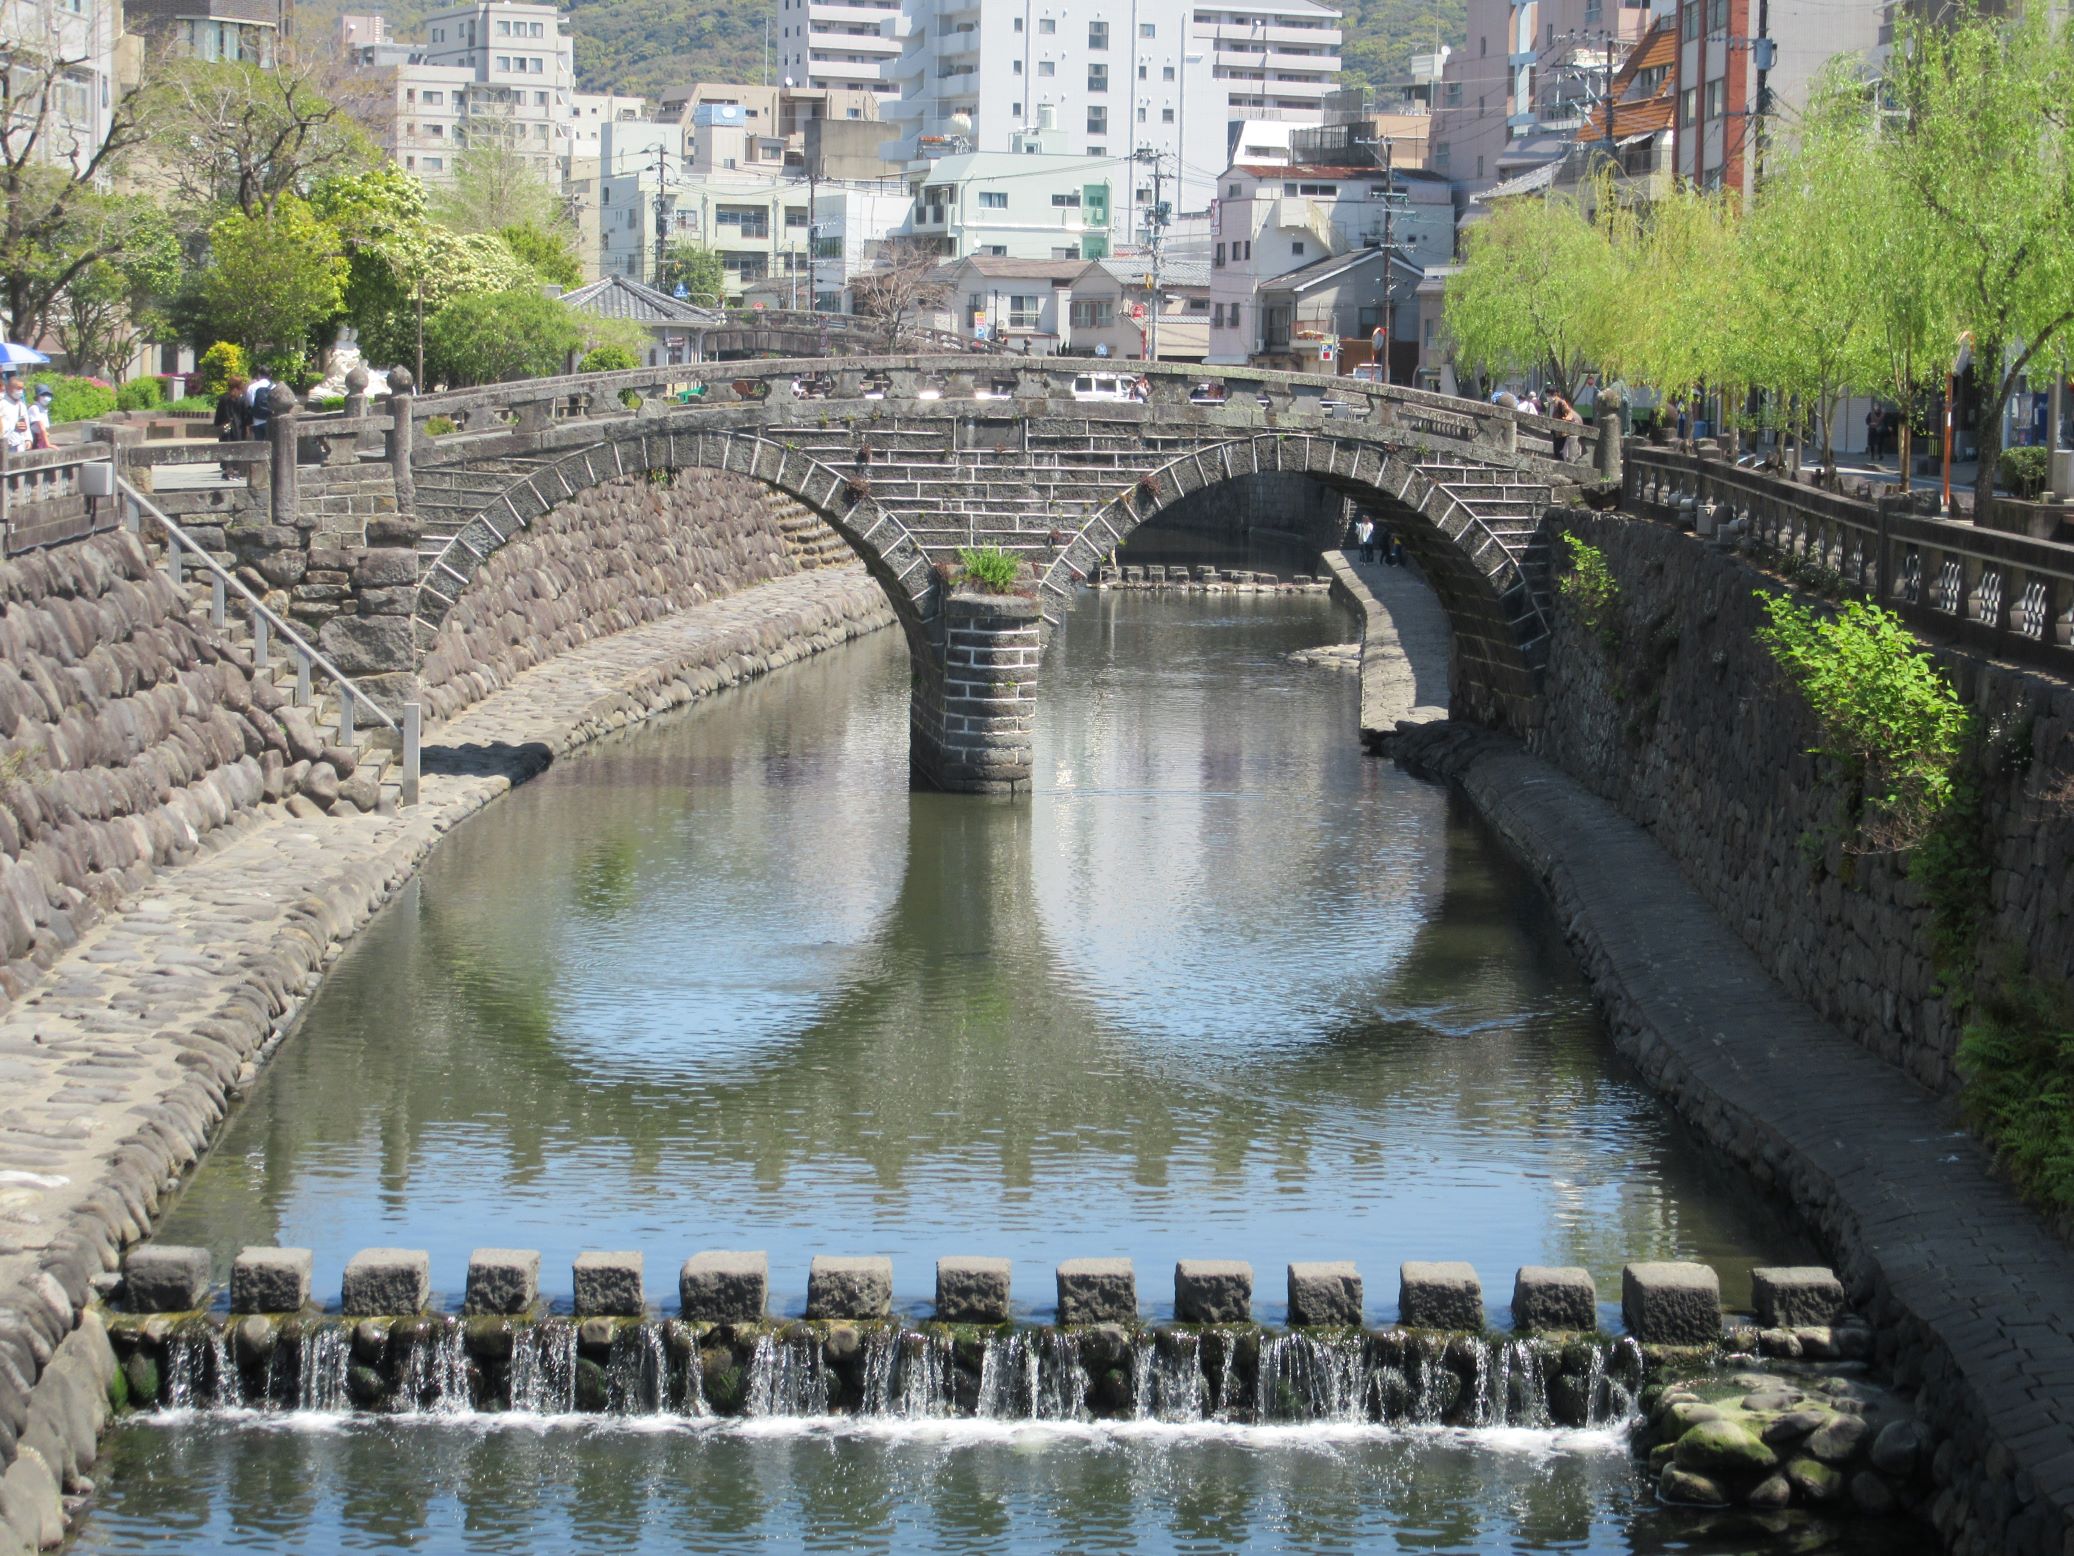 山田隆一が撮影した、長崎県長崎市の眼鏡橋の写真です。